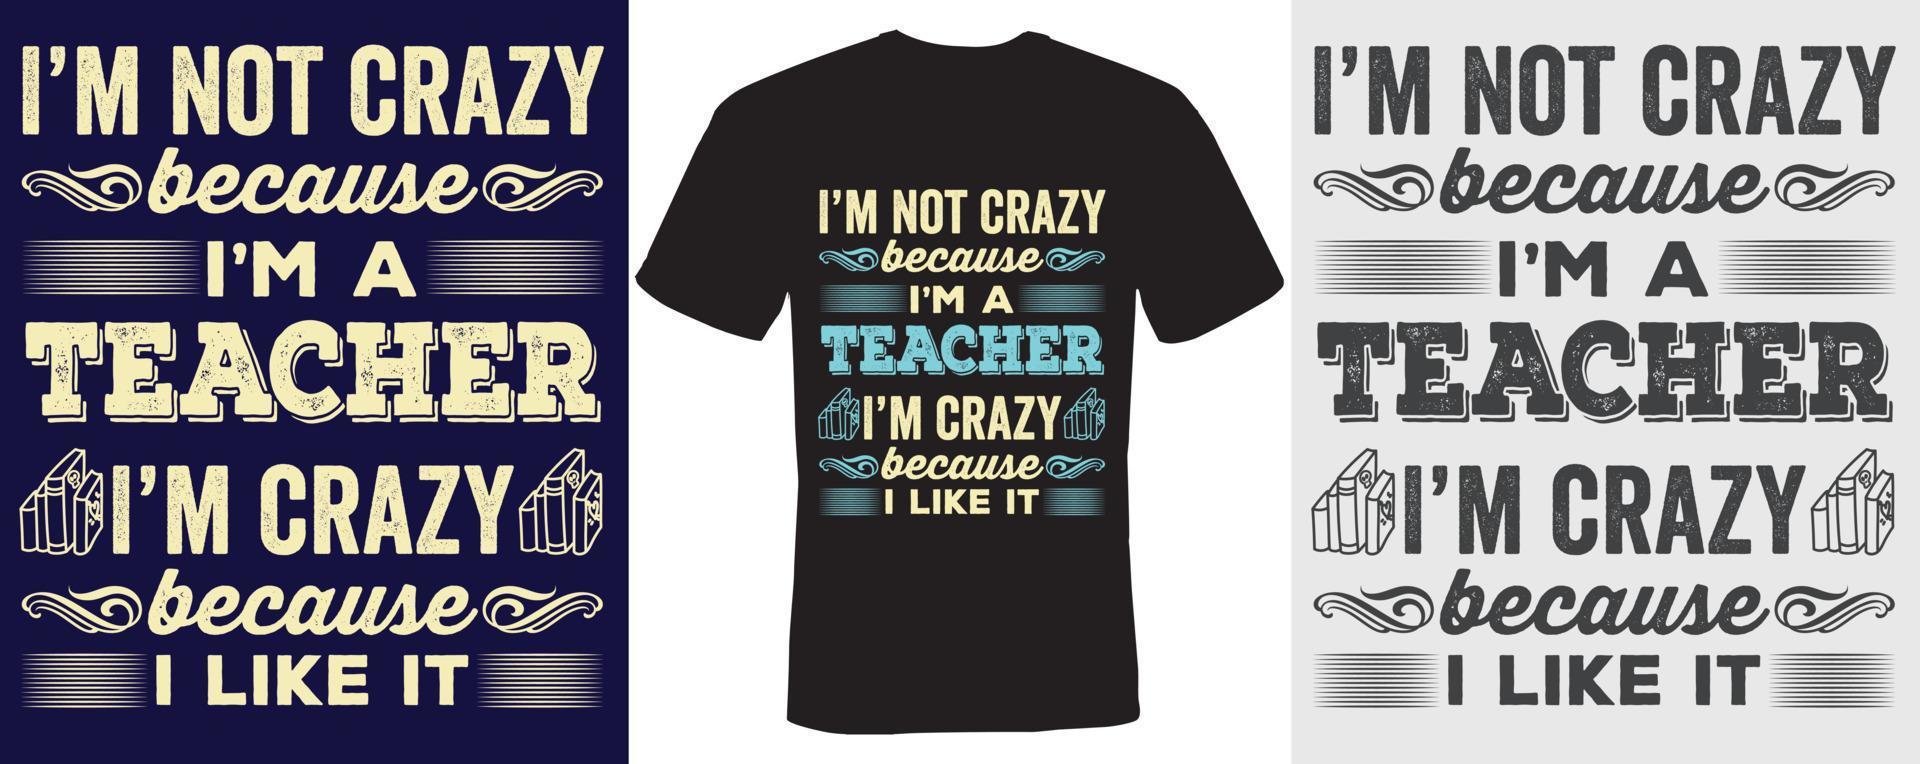 Ich bin nicht verrückt, weil ich ein Lehrer bin. Ich bin verrückt, weil ich es mag, T-Shirt-Design für Lehrer vektor